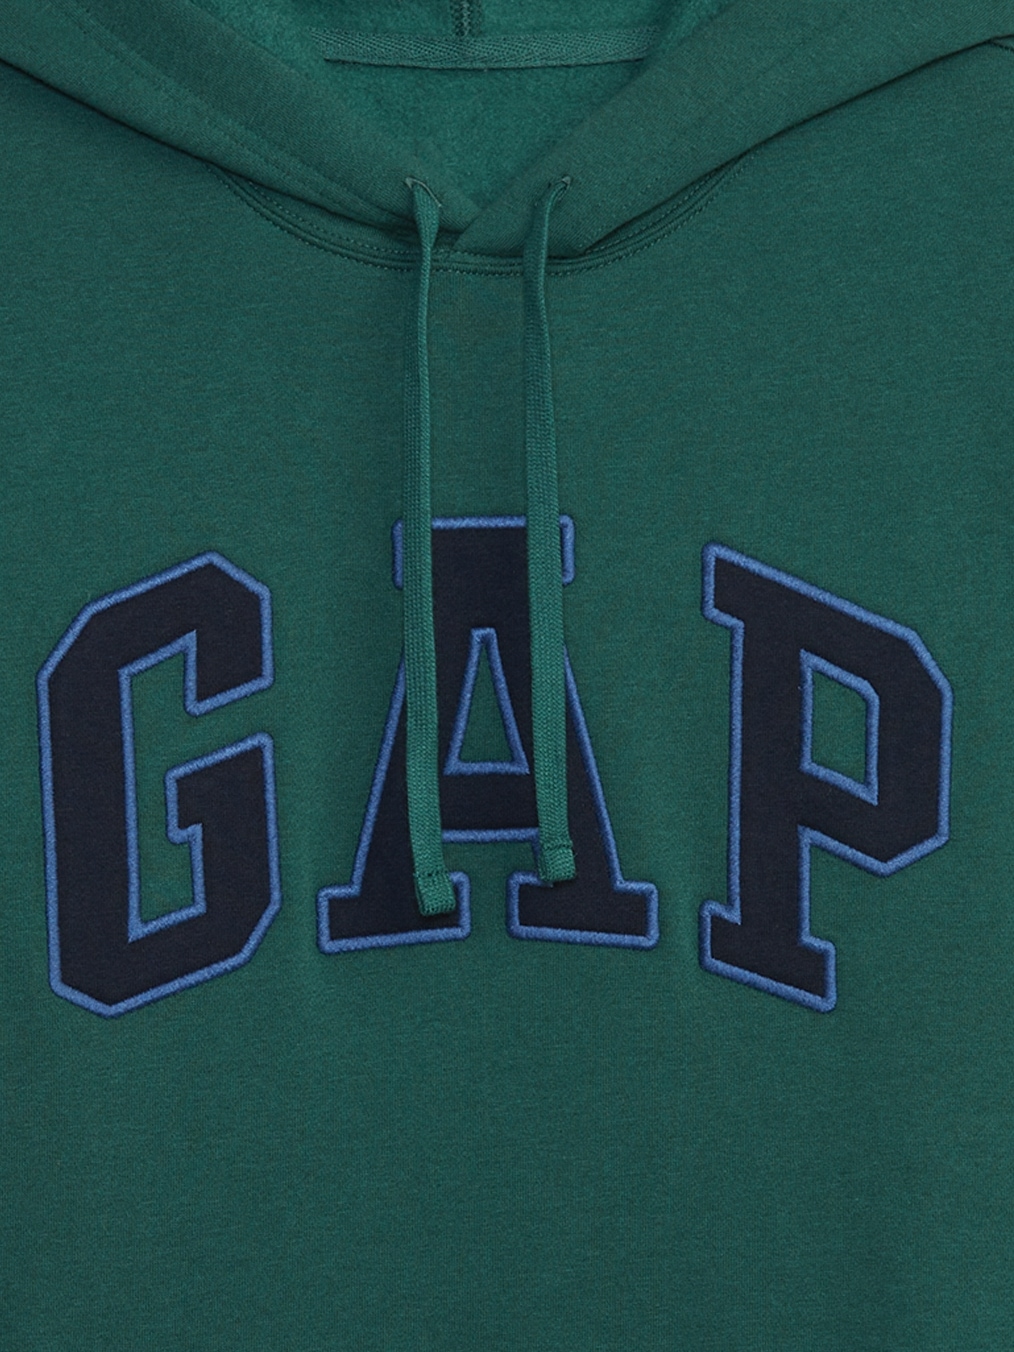 Vintage Gap Hoodie Zipper Gap Big Logo Pullover Jumpers M Size -  Israel